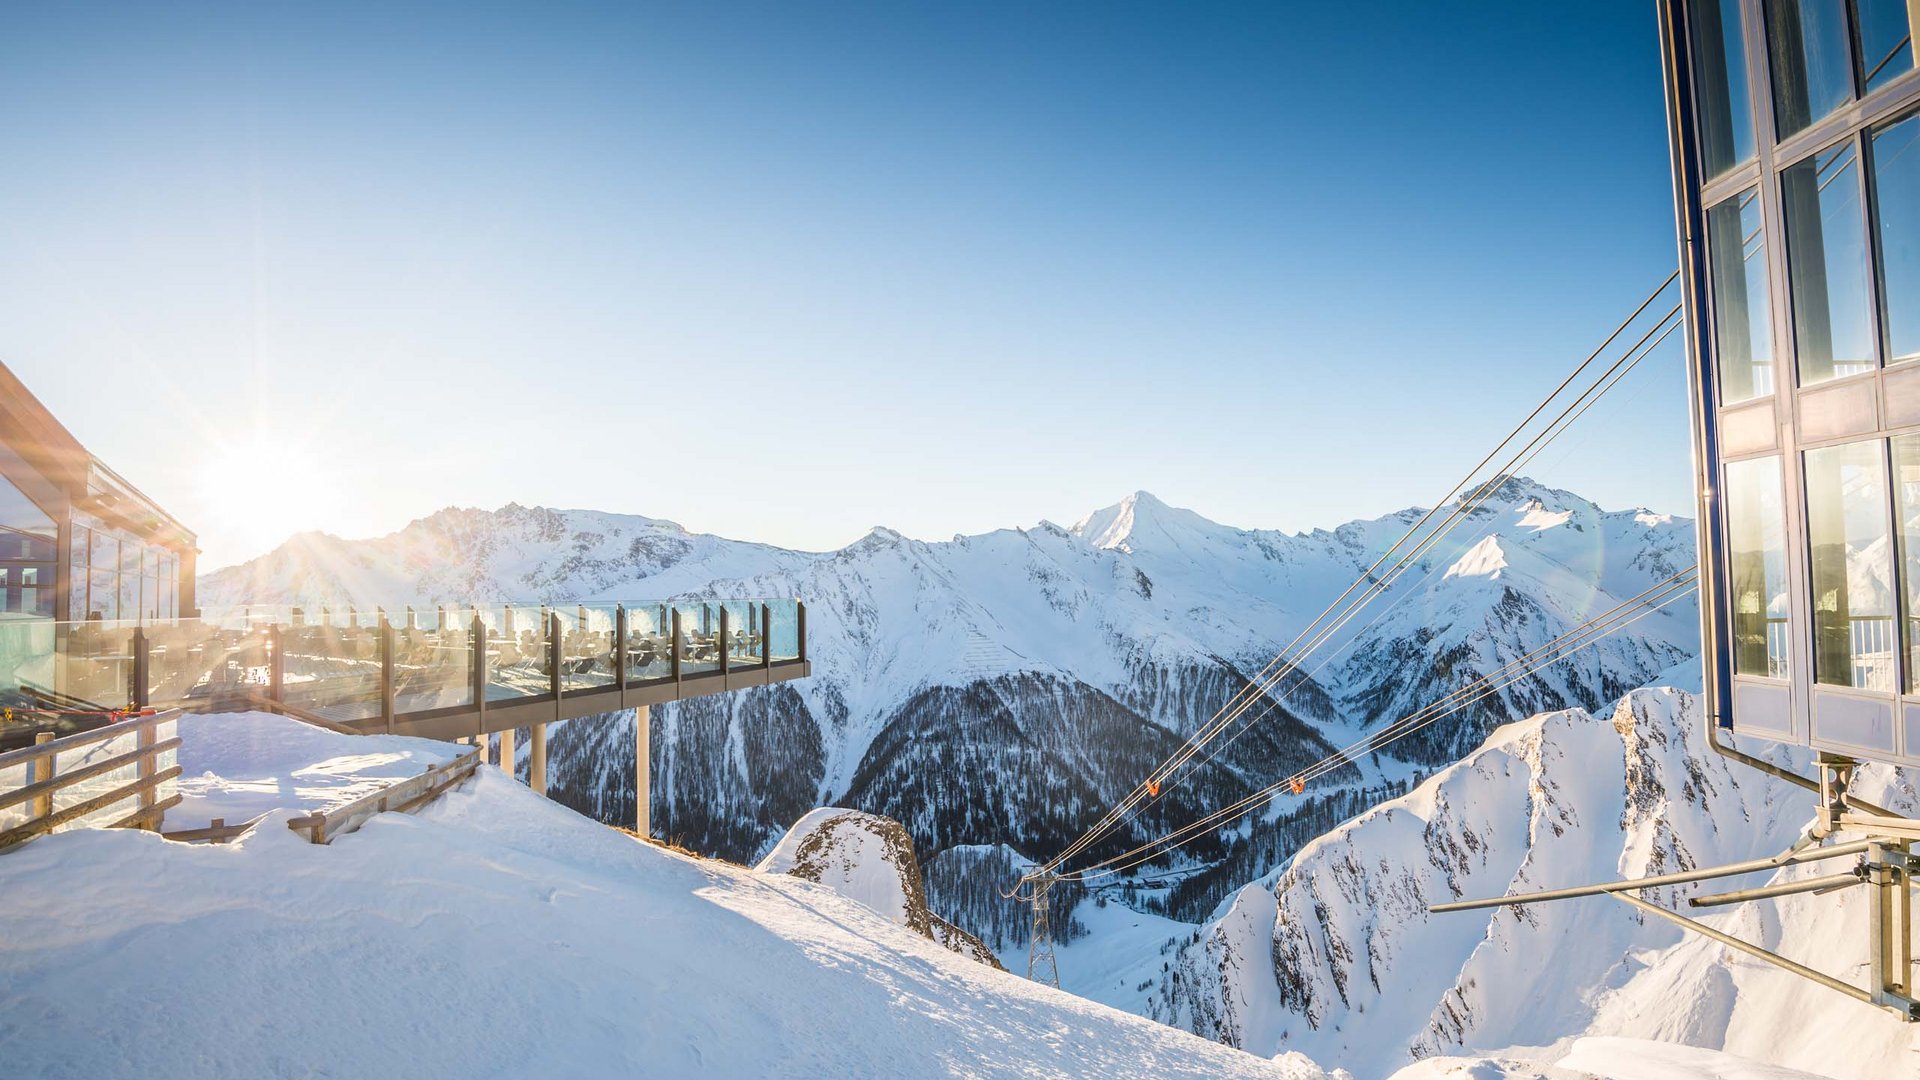 Ischgl/Samnaun ski resort: limitless skiing fun